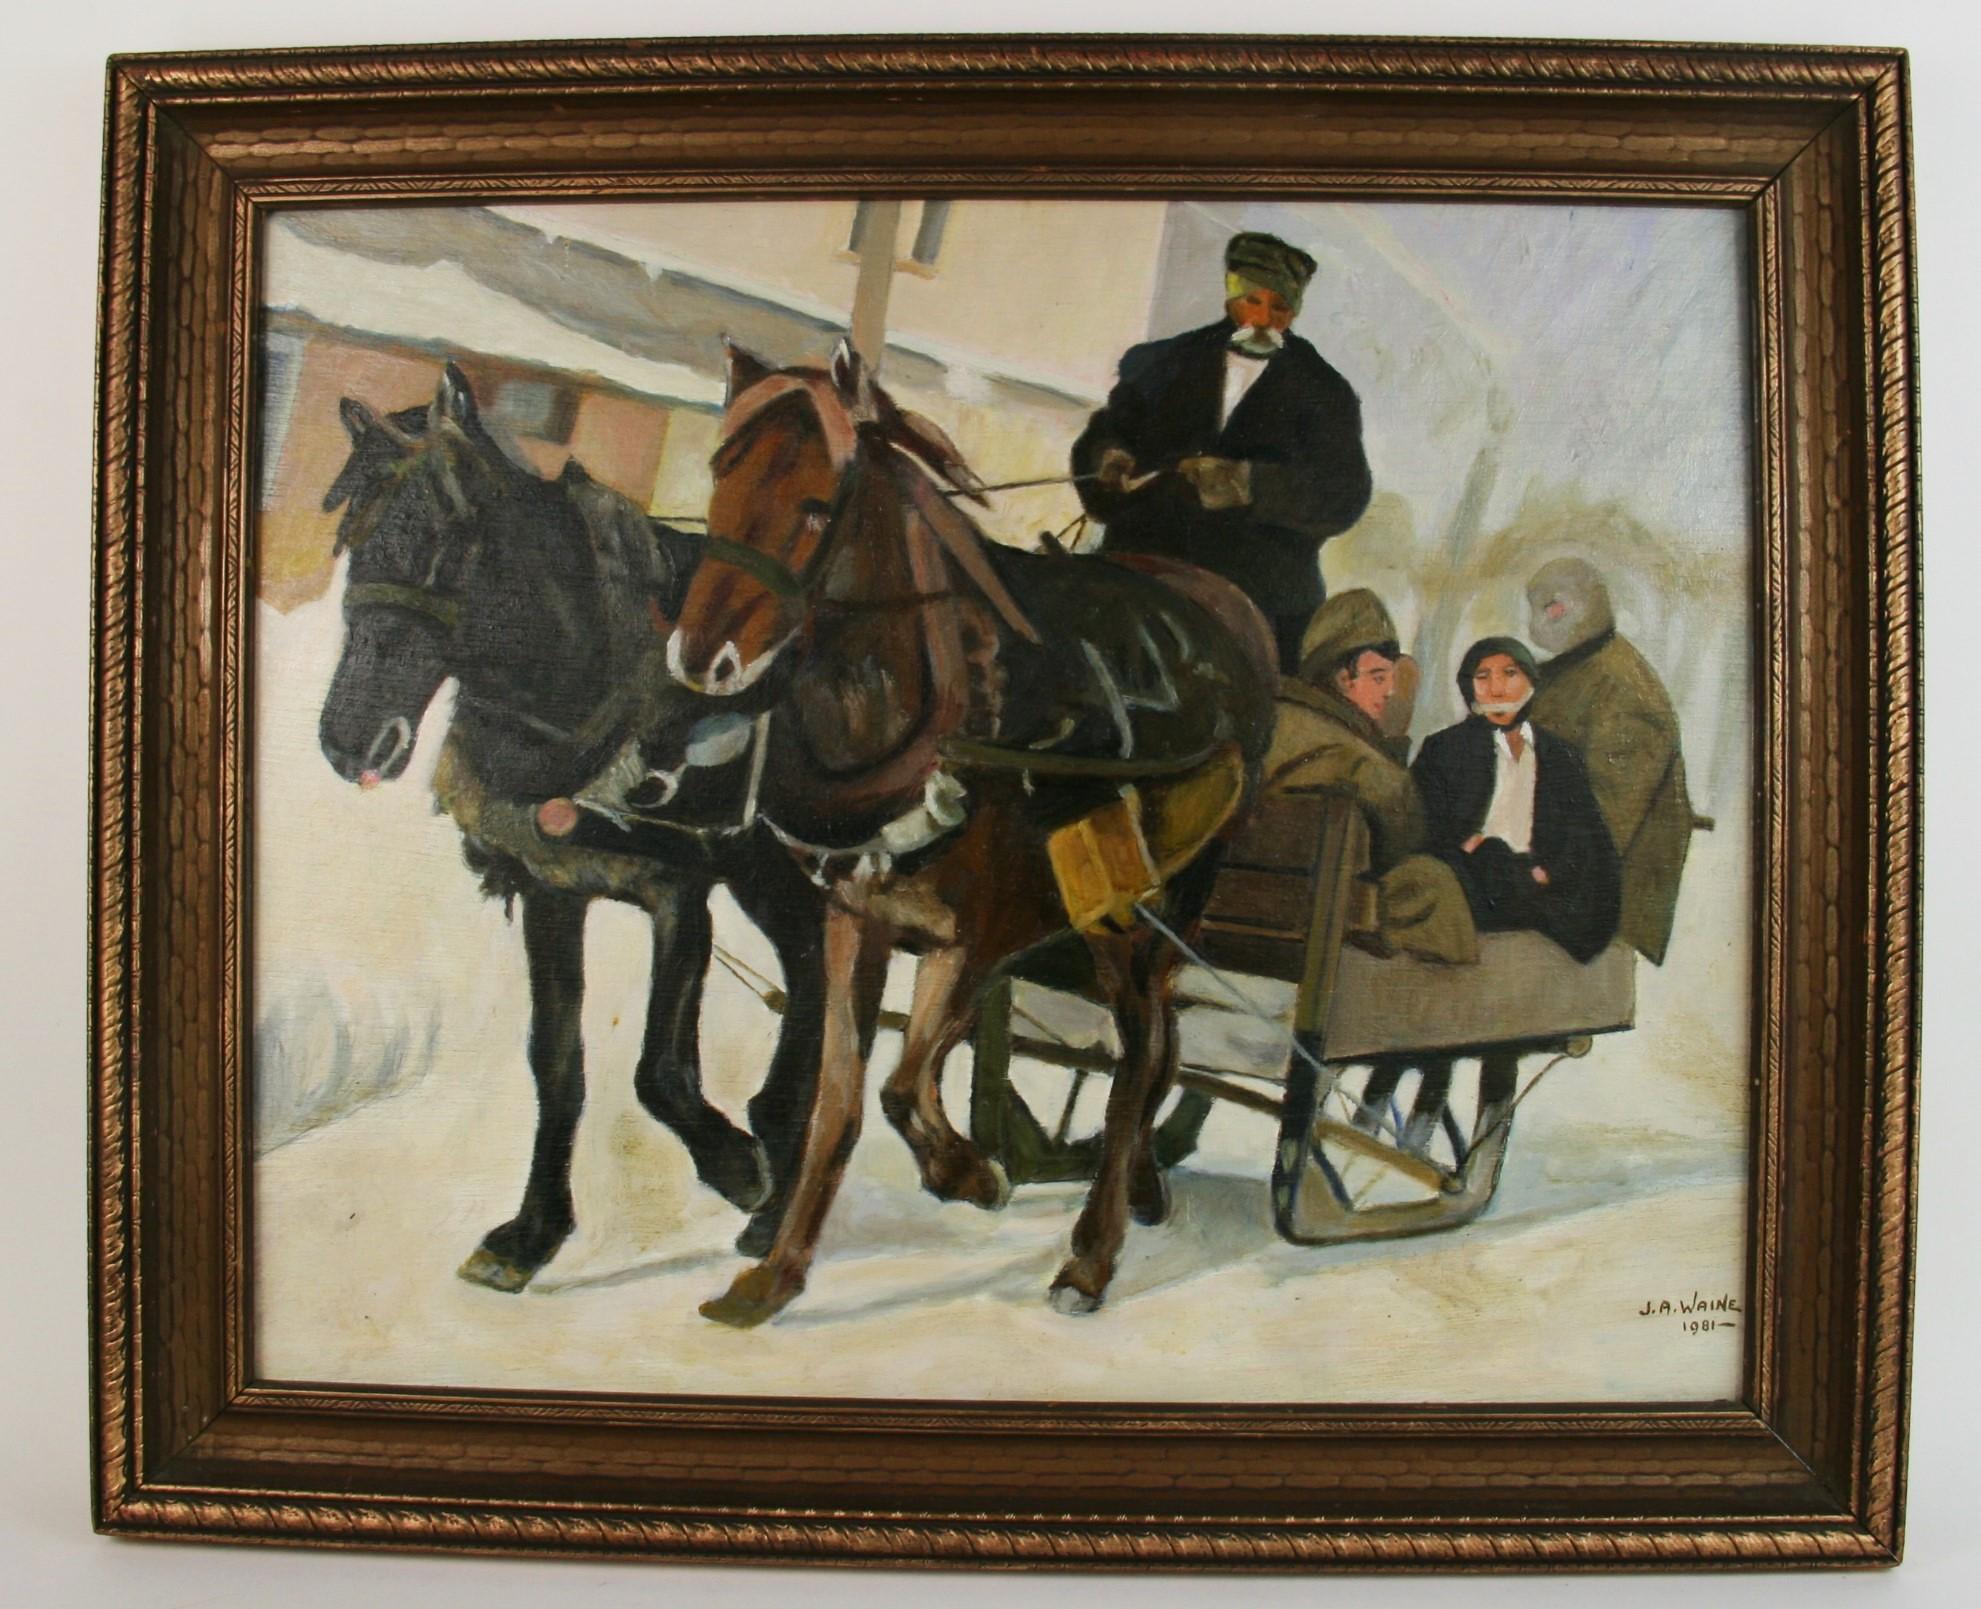 Figurative Painting J.A. Waine -  Cadre de traîneau figuratif de paysage avec cheval drapé 